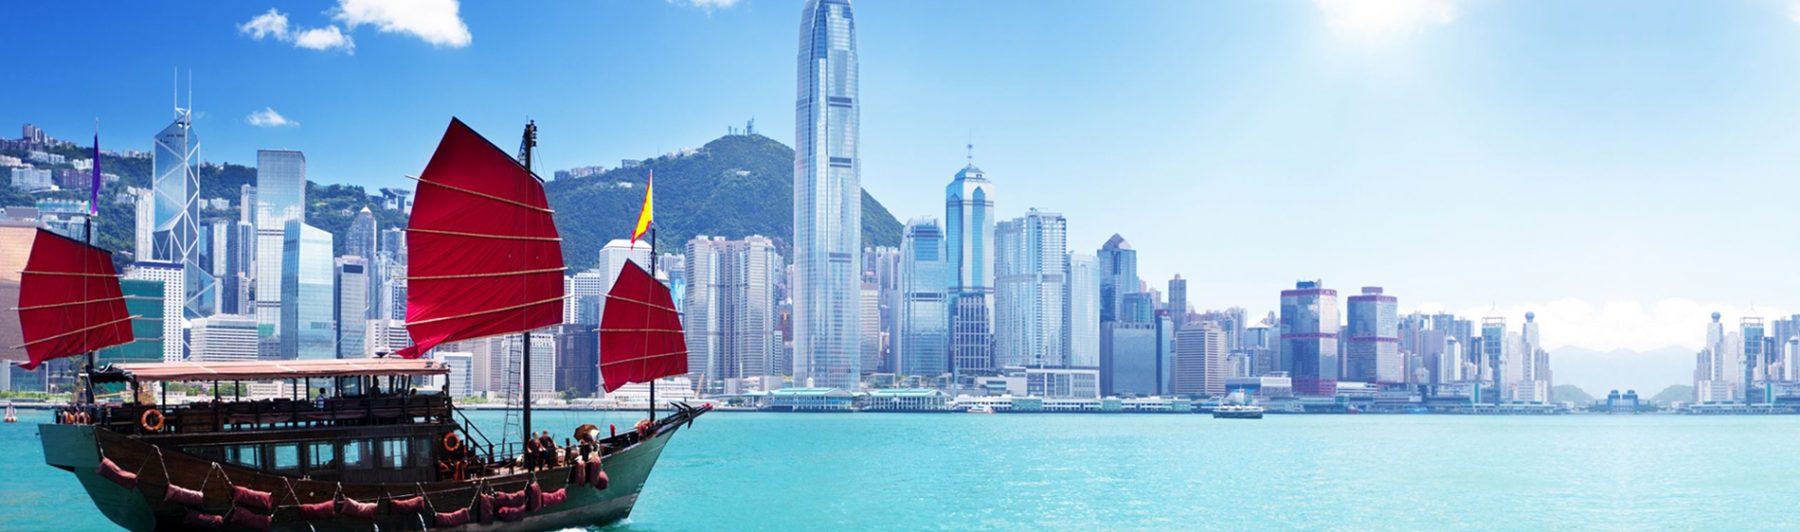 Hong Kong Tourism